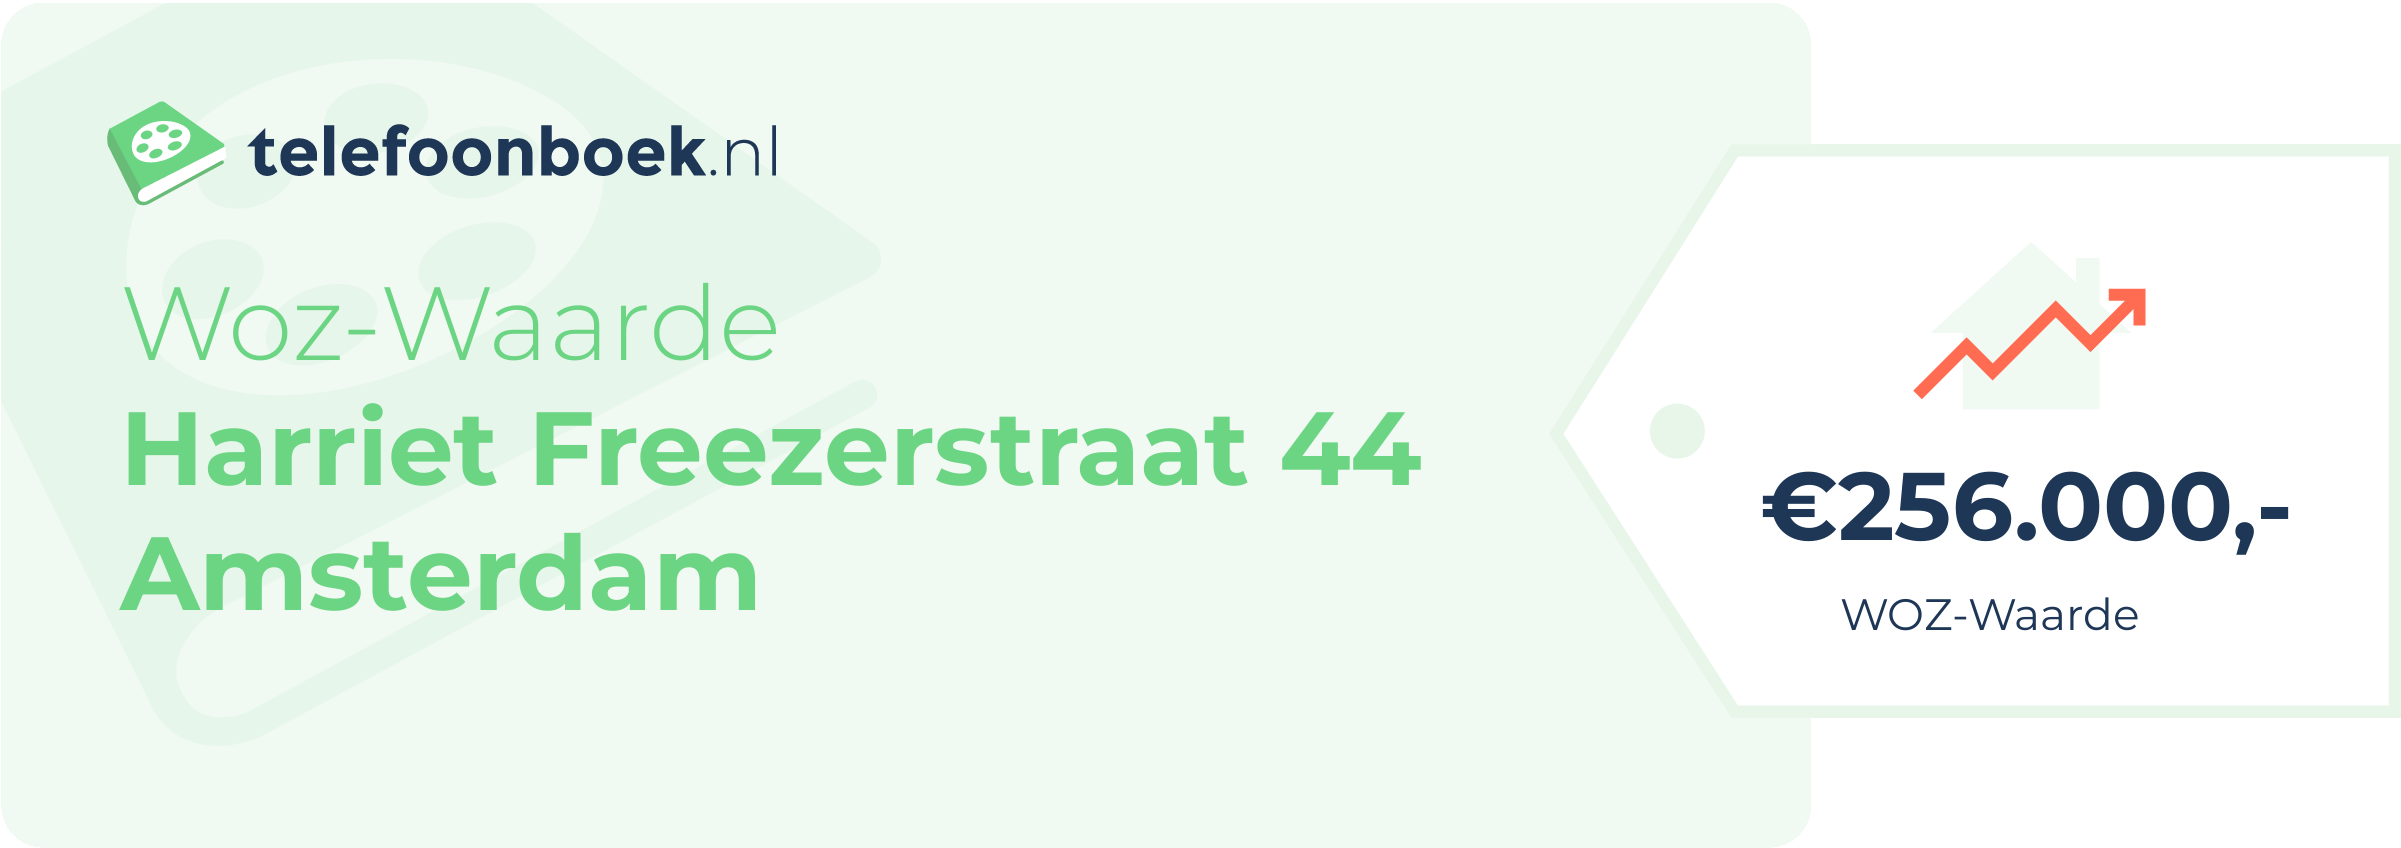 WOZ-waarde Harriet Freezerstraat 44 Amsterdam